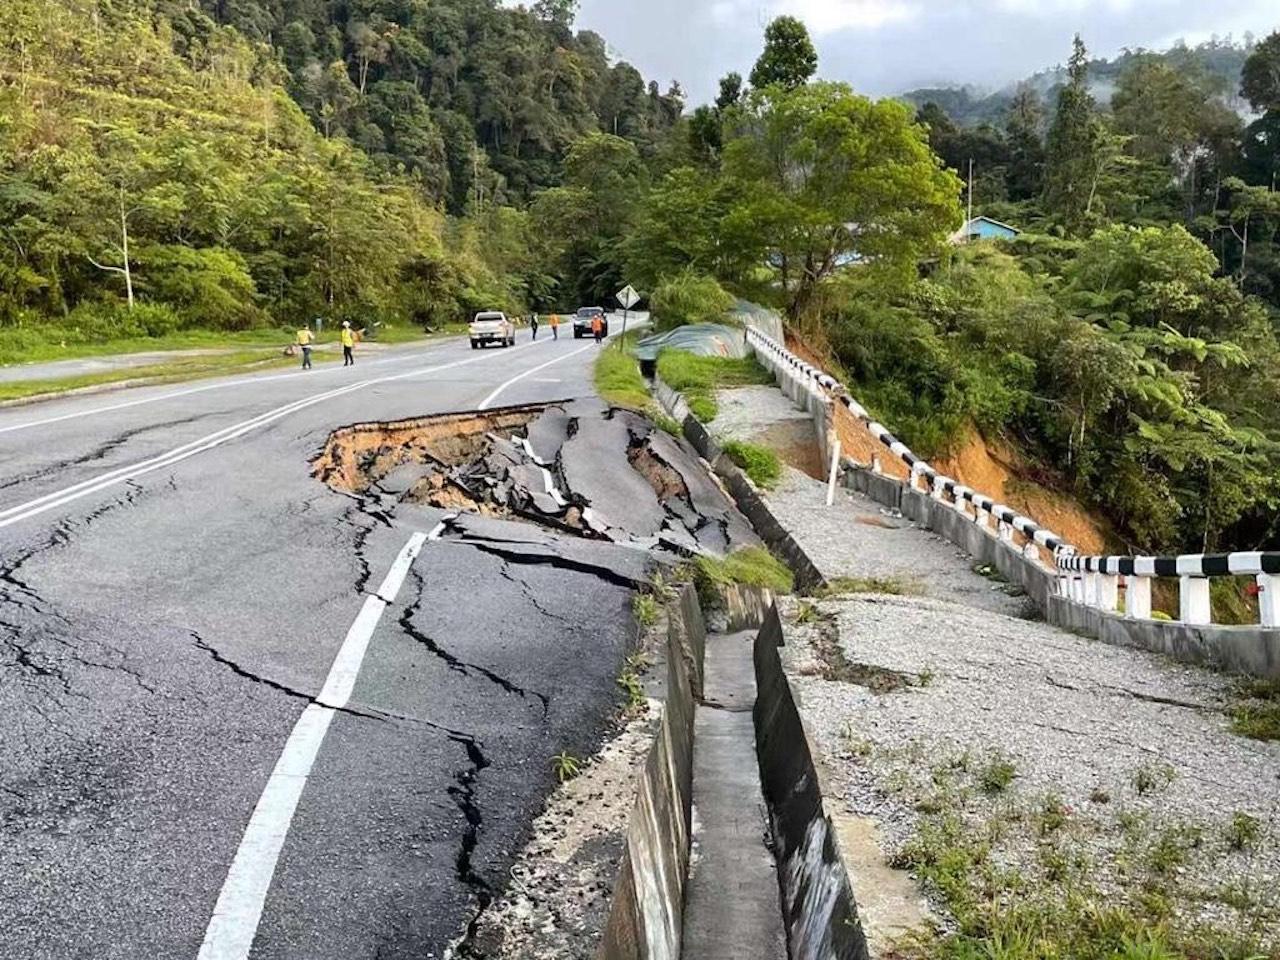 Cameron highland landslide